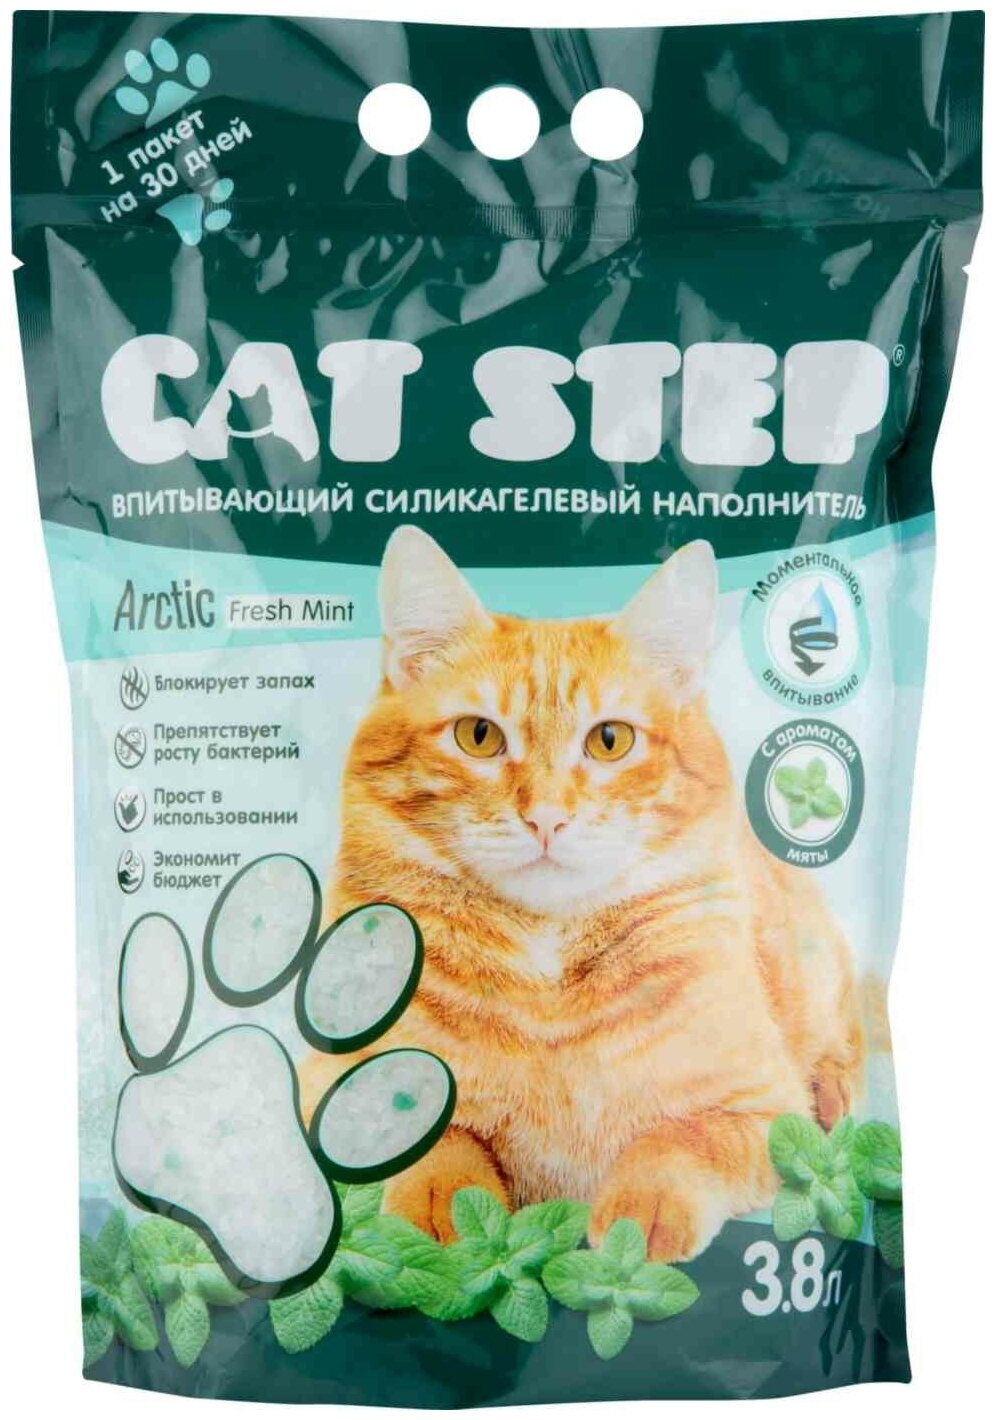 Наполнитель впитывающий силикагелевый CAT STEP Arctic Fresh Mint, 3,8 л - фотография № 5